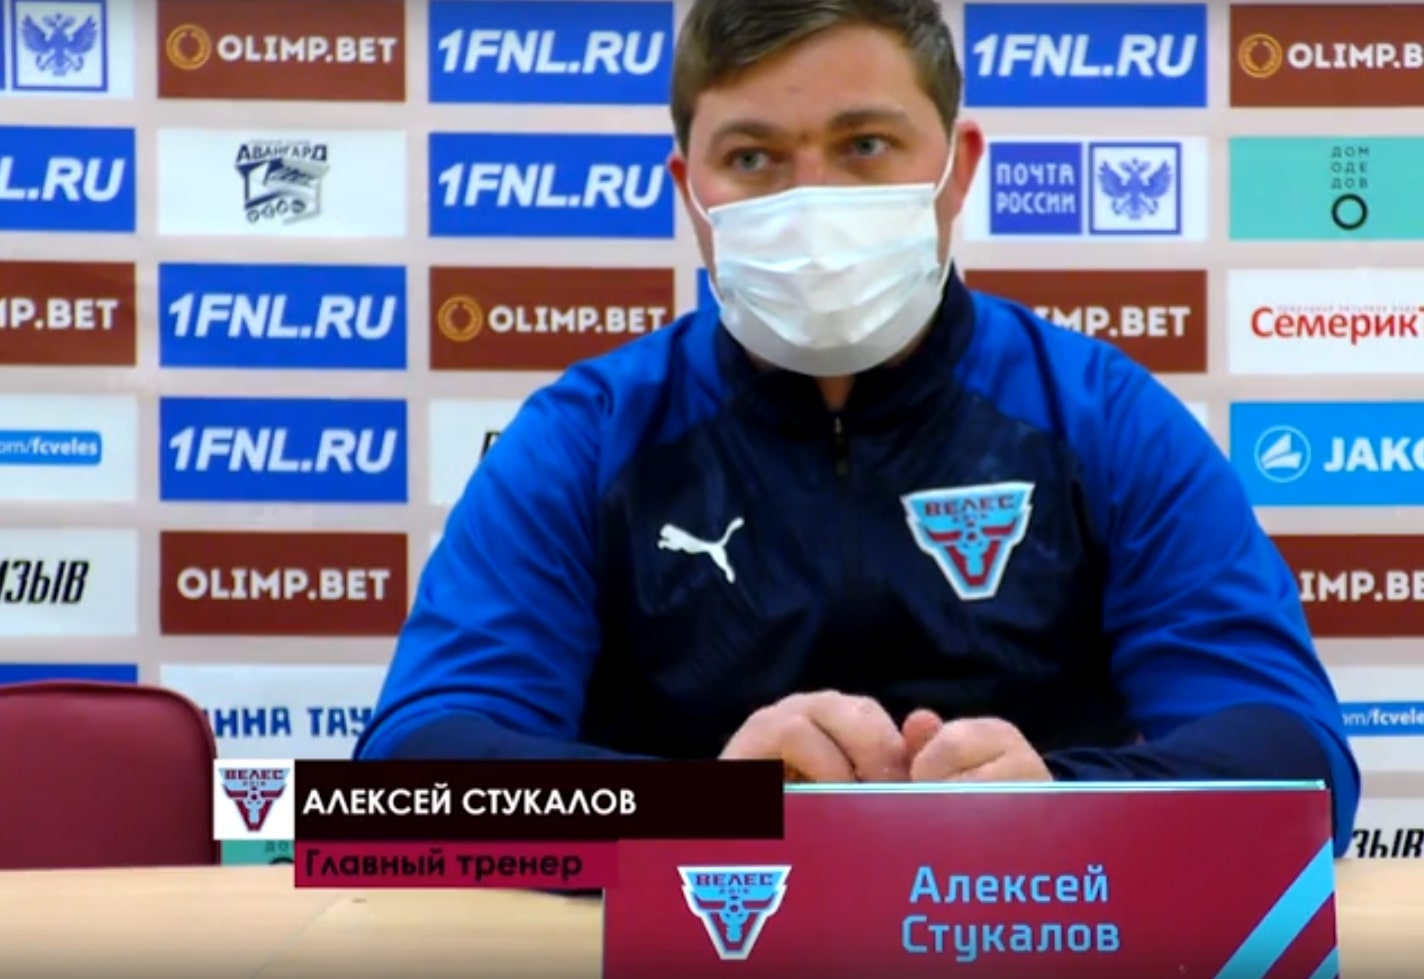 Алексей Стукалов: «Я считаю, что мы провели хорошую игру, но последние 15 минут смазали впечатления от матча»